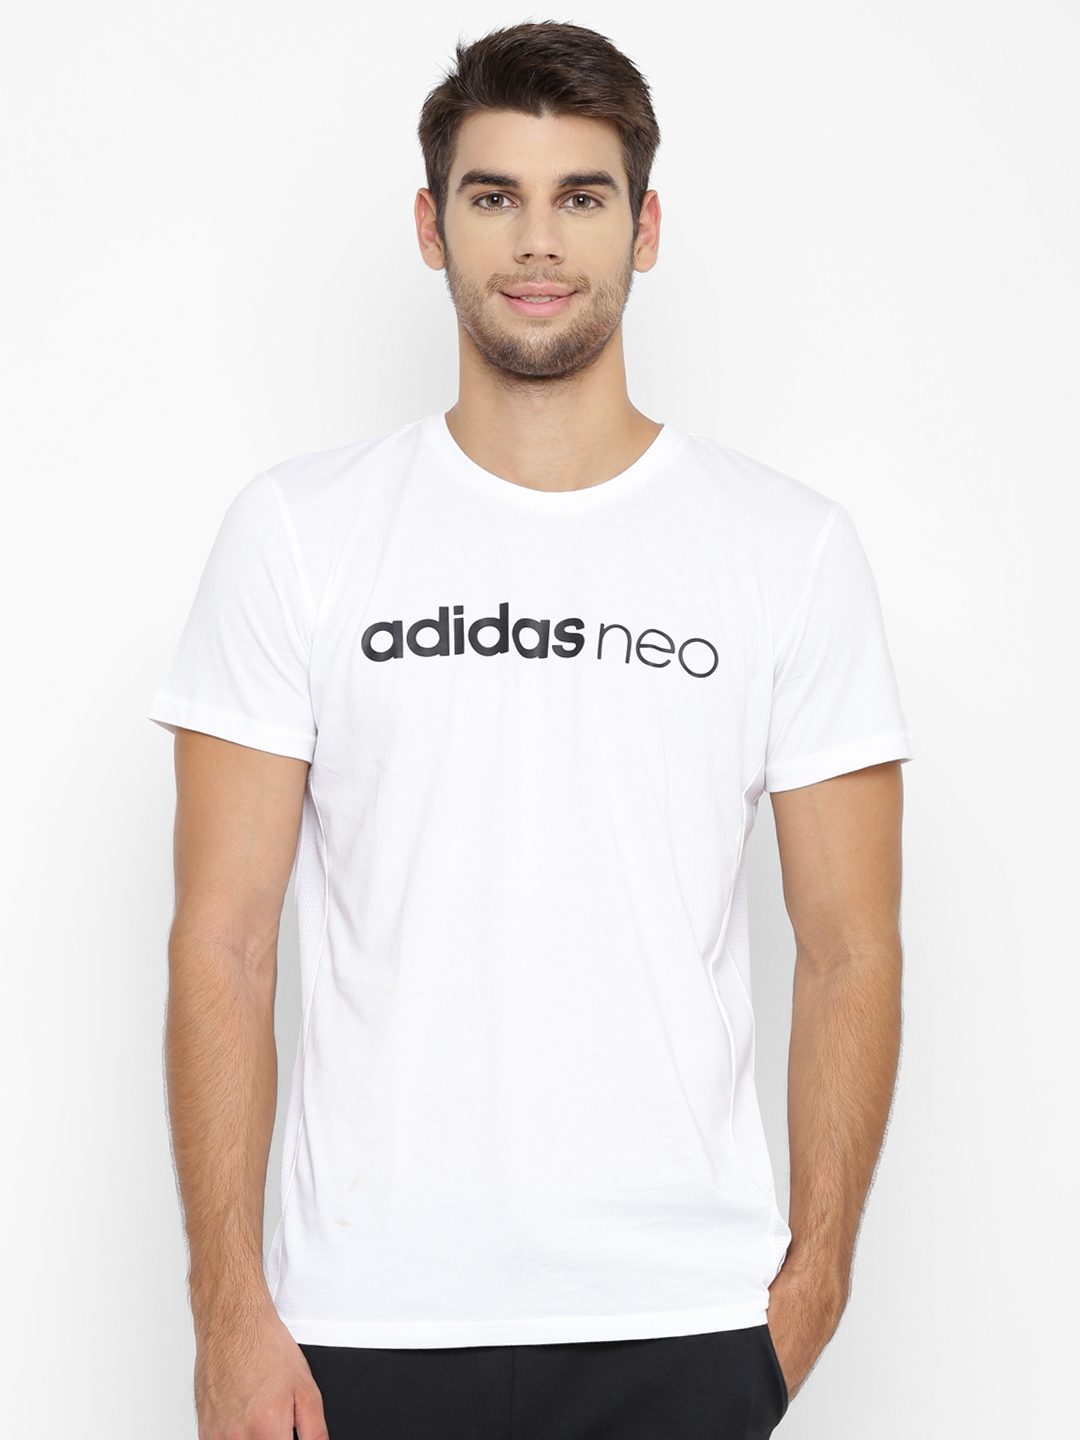 Groet Rudyard Kipling Europa Buy ADIDAS NEO Men White Favorite Mesh Brand Print Round Neck T Shirt -  Tshirts for Men 2022776 | Myntra